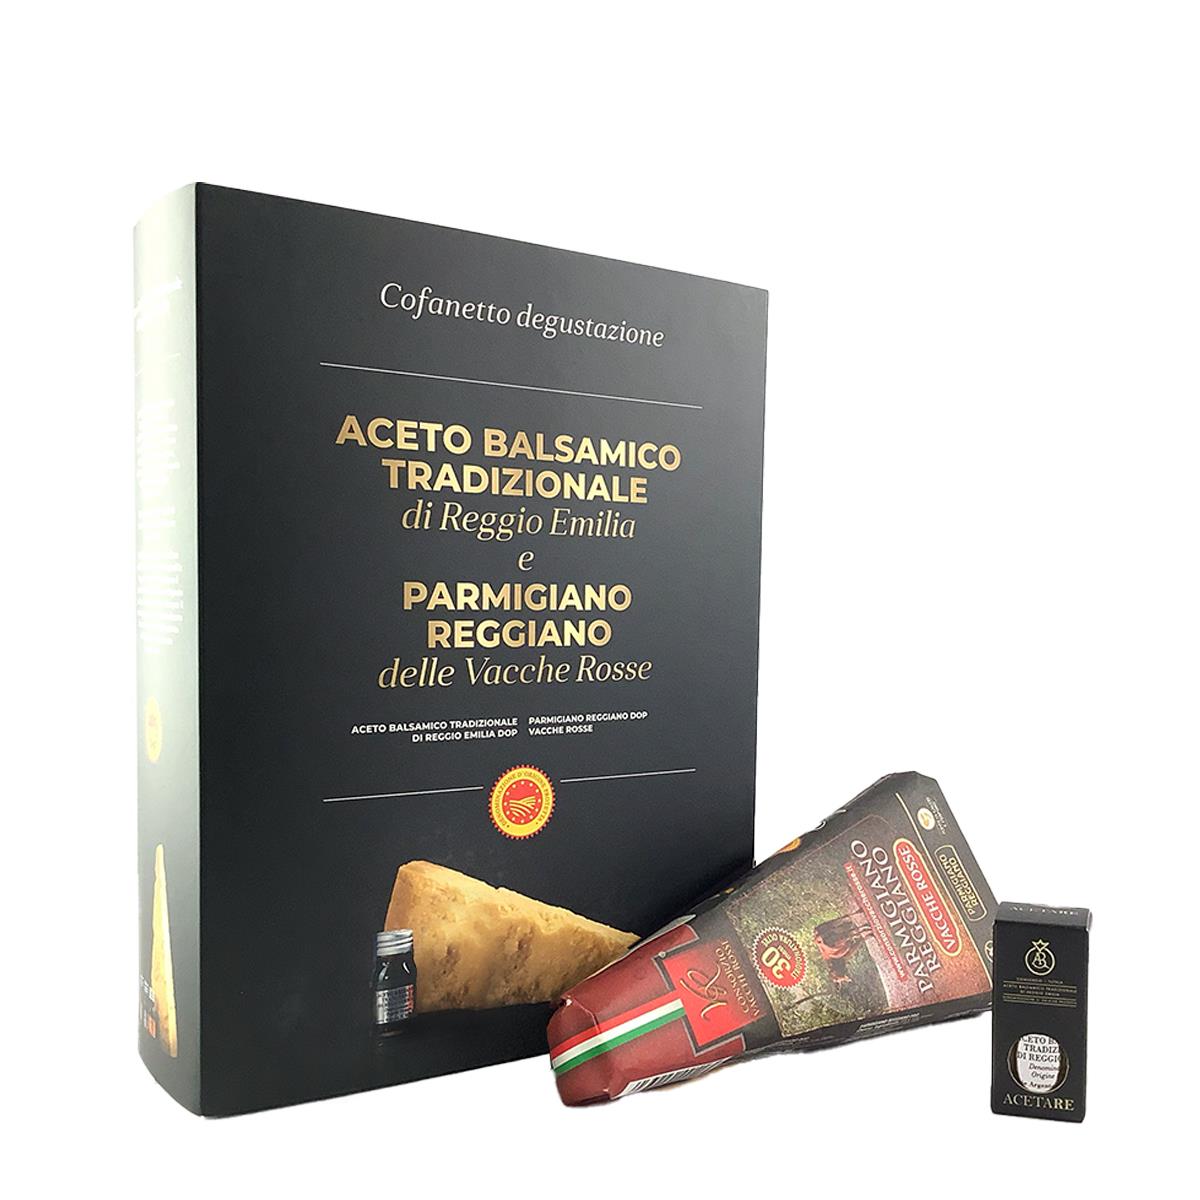 Caixa de Parmigiano Reggiano Vacche Rosse 30 Meses e Vinagre Balsâmico Reggio Emilia Qualidade Prat